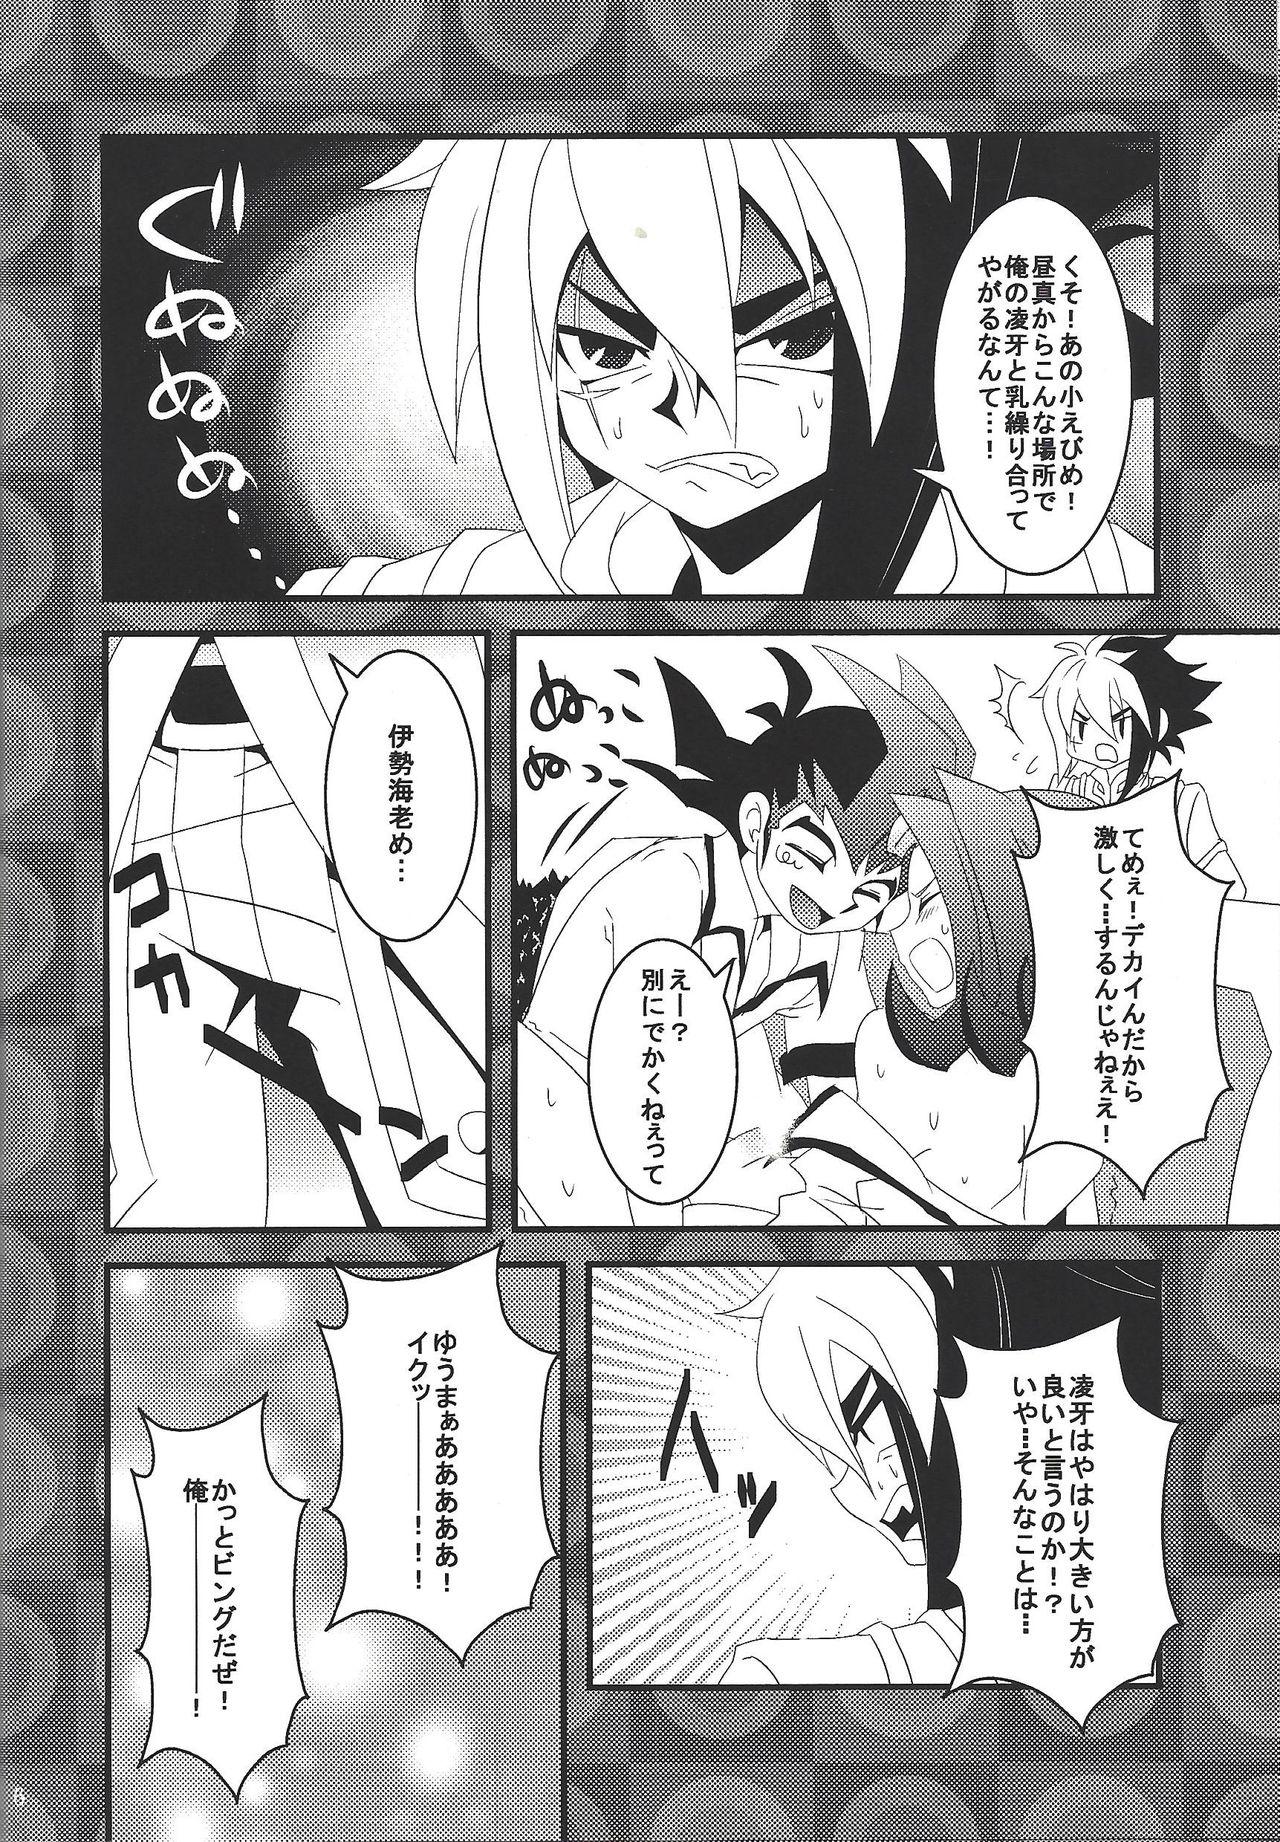 Cocks Riajū shi teru ryōga o ne totte ganmen kijō shite moraitai IV no hon - Yu-gi-oh zexal Screaming - Page 5